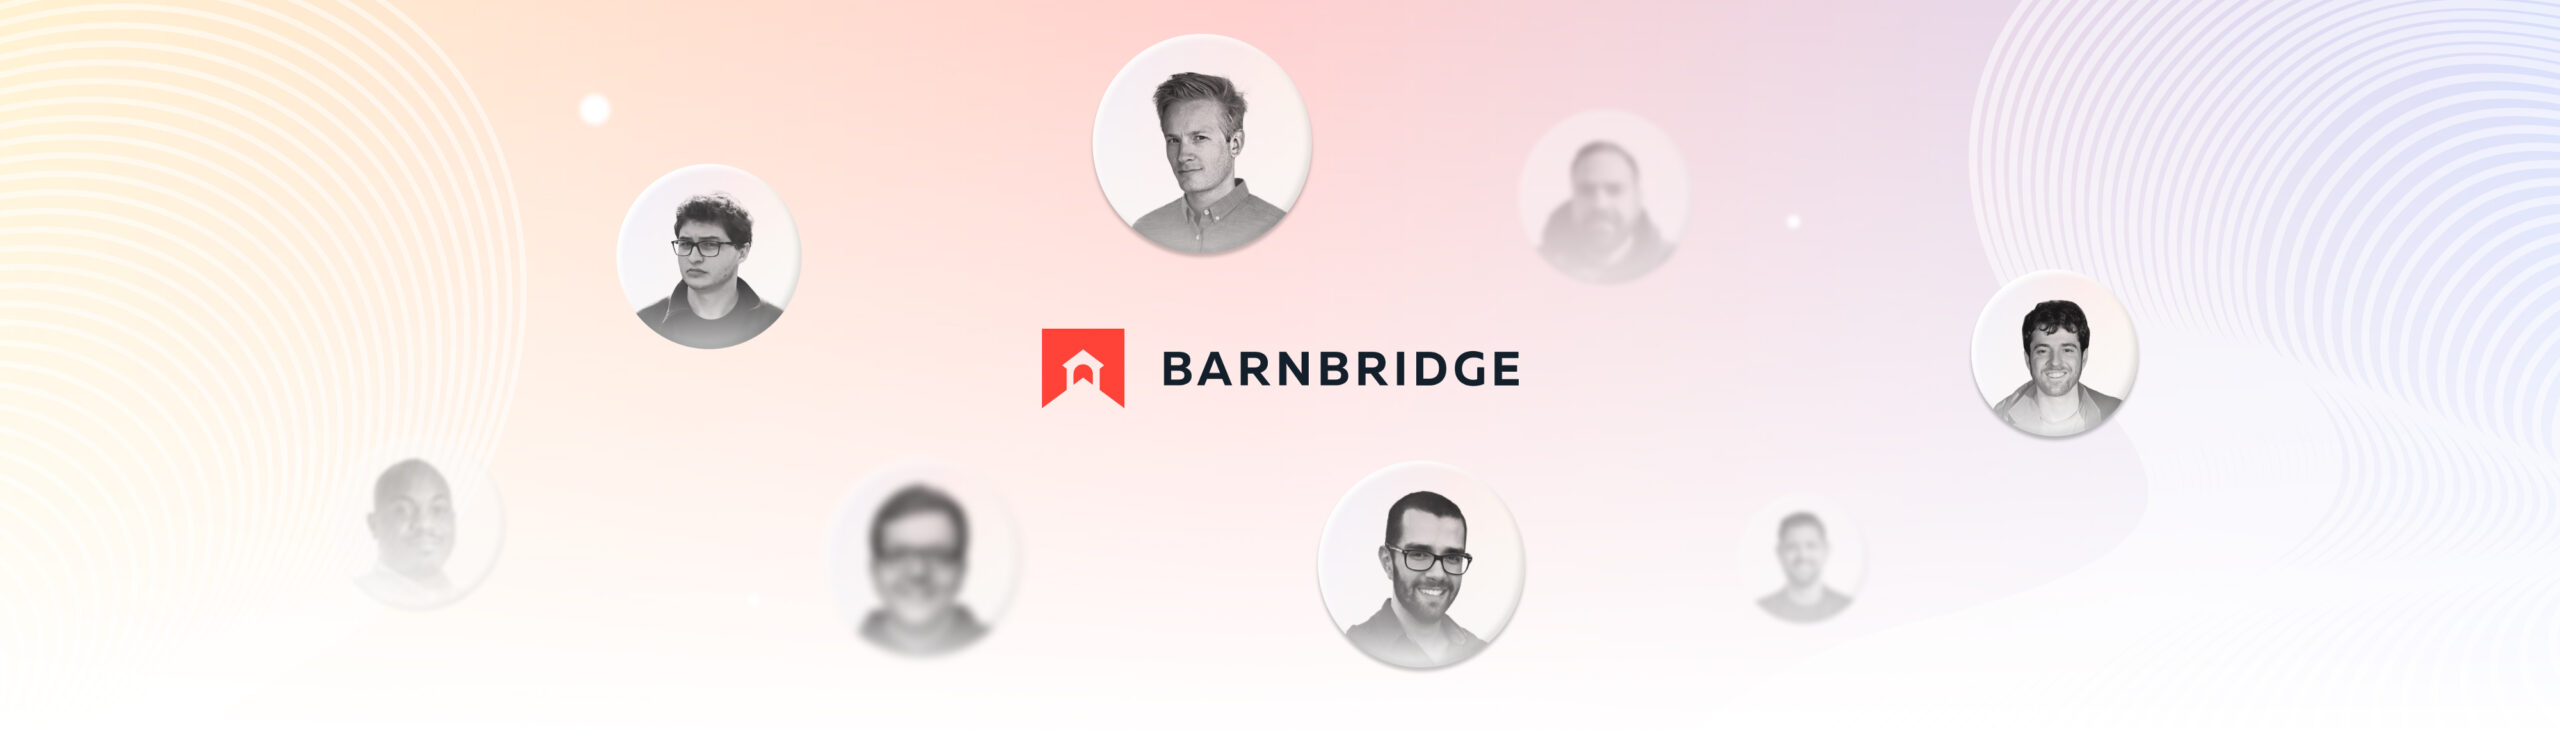 Team-Barnbridge